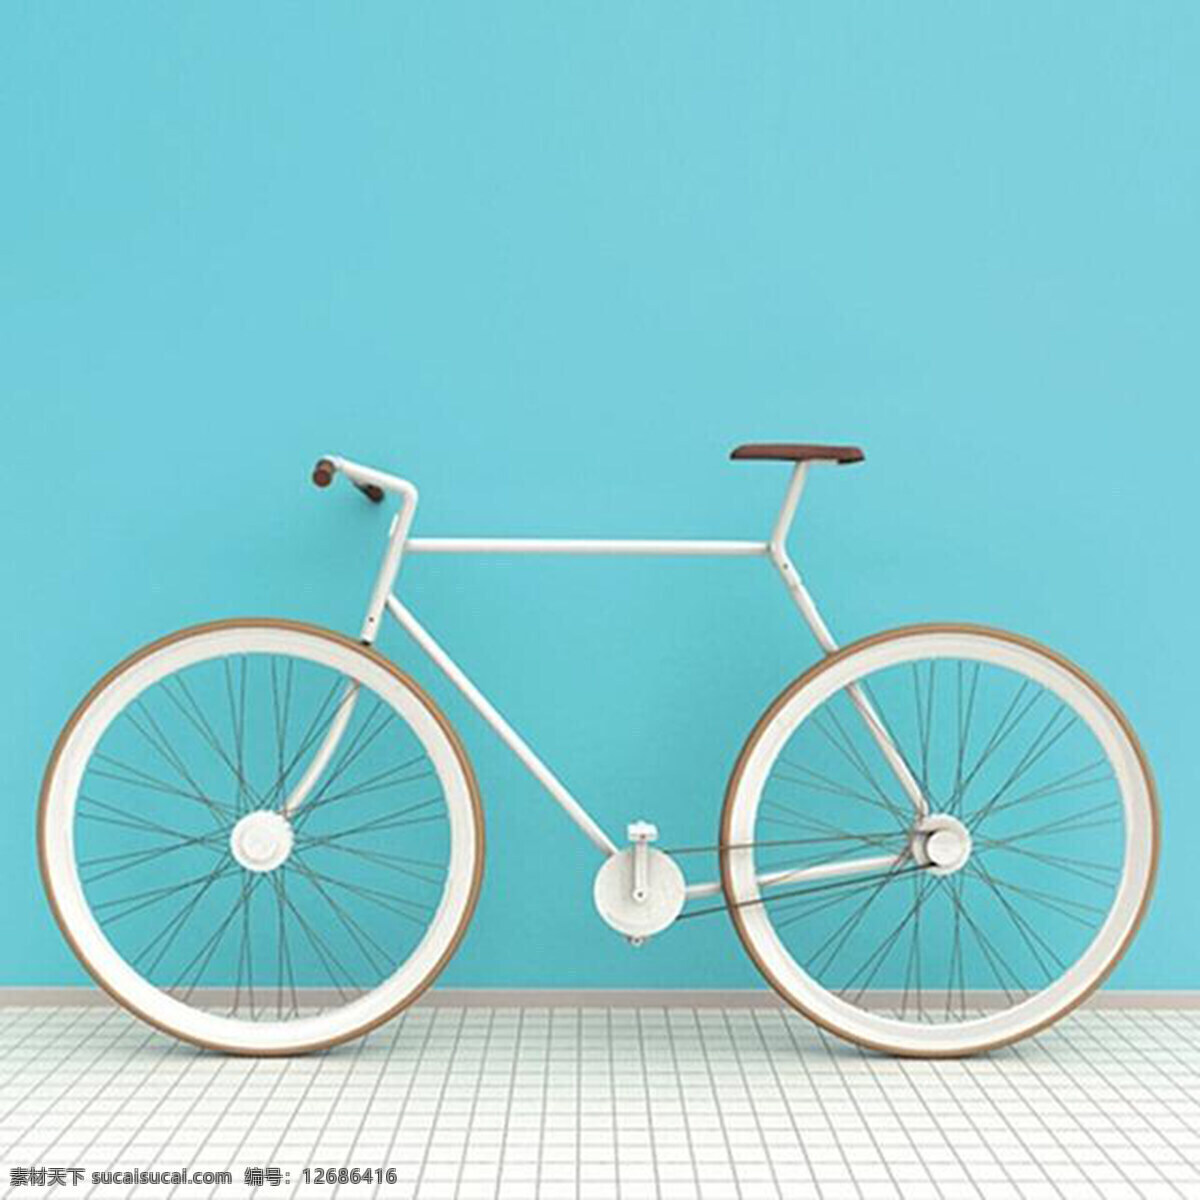 完全 打包 自行车 产品设计 创意 独特 工业设计 生活 用品